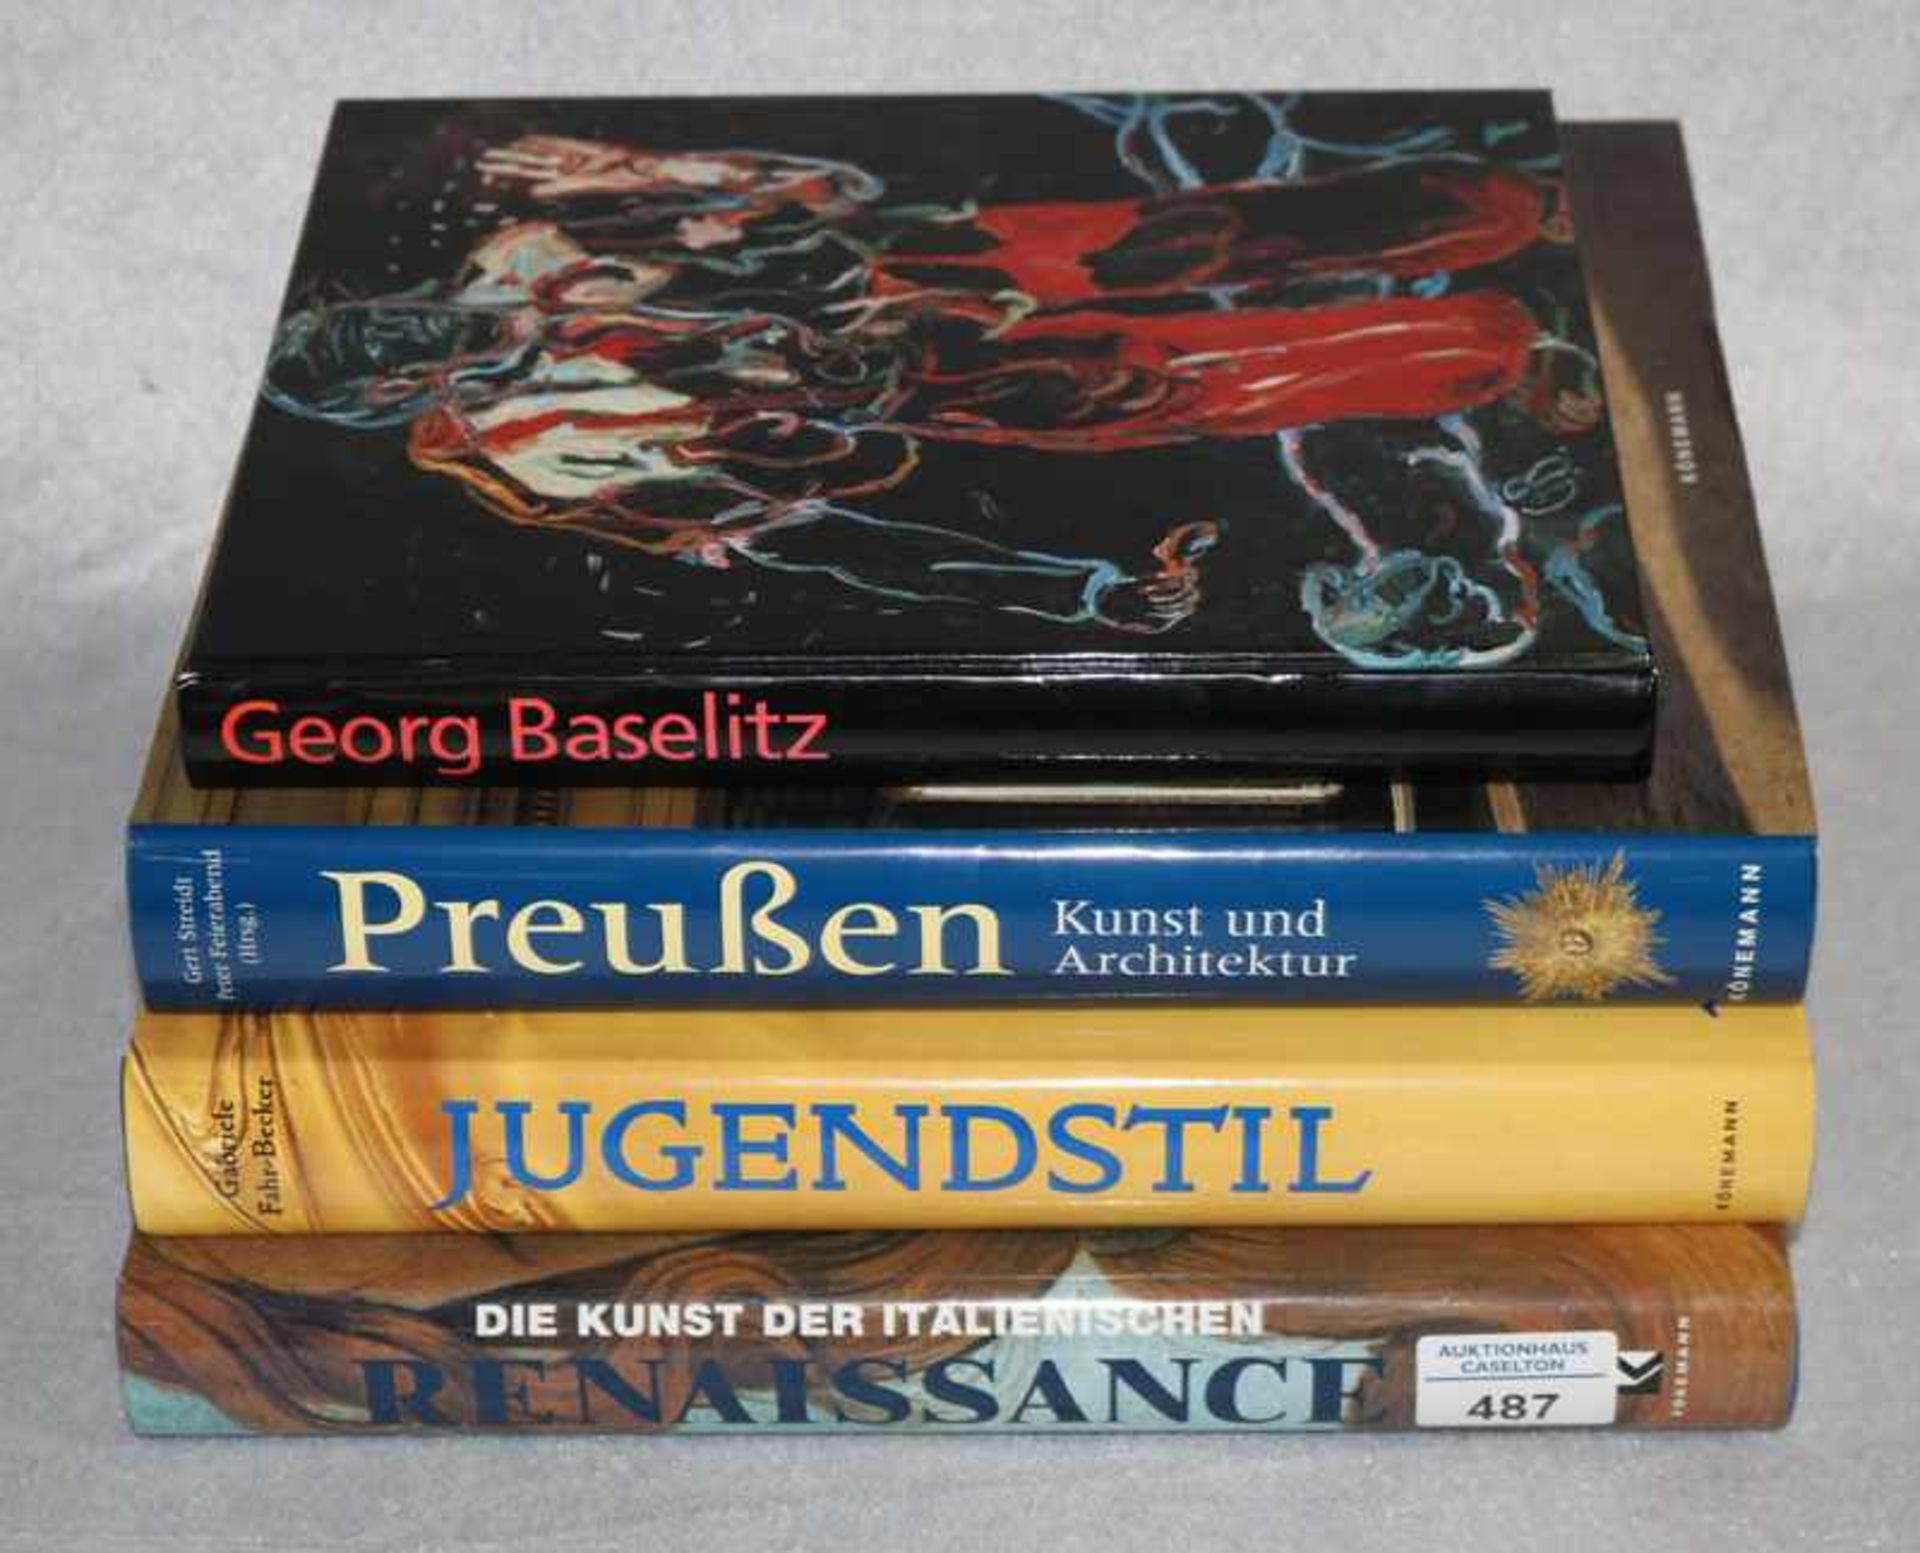 4 Kunstbücher: Jugendstil, Italienische Renaissance, Georg Baselitz und Preußen Kunst und